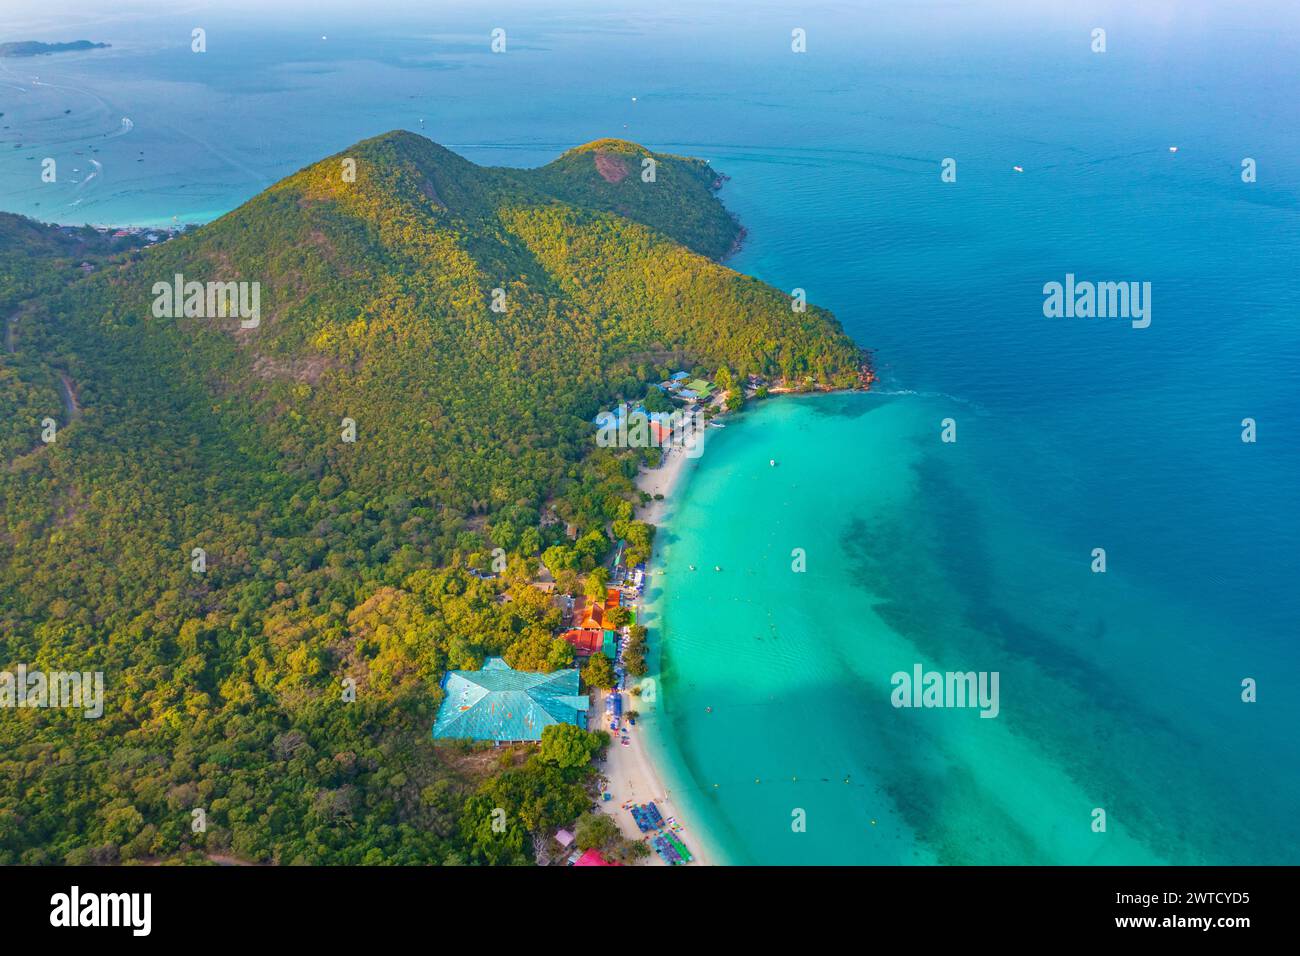 Travel Vacation Resorts vista aerea sopra le isole e gli insediamenti con case alberghiere sulle spiagge di resort tropicali con barche e navi. Foto Stock